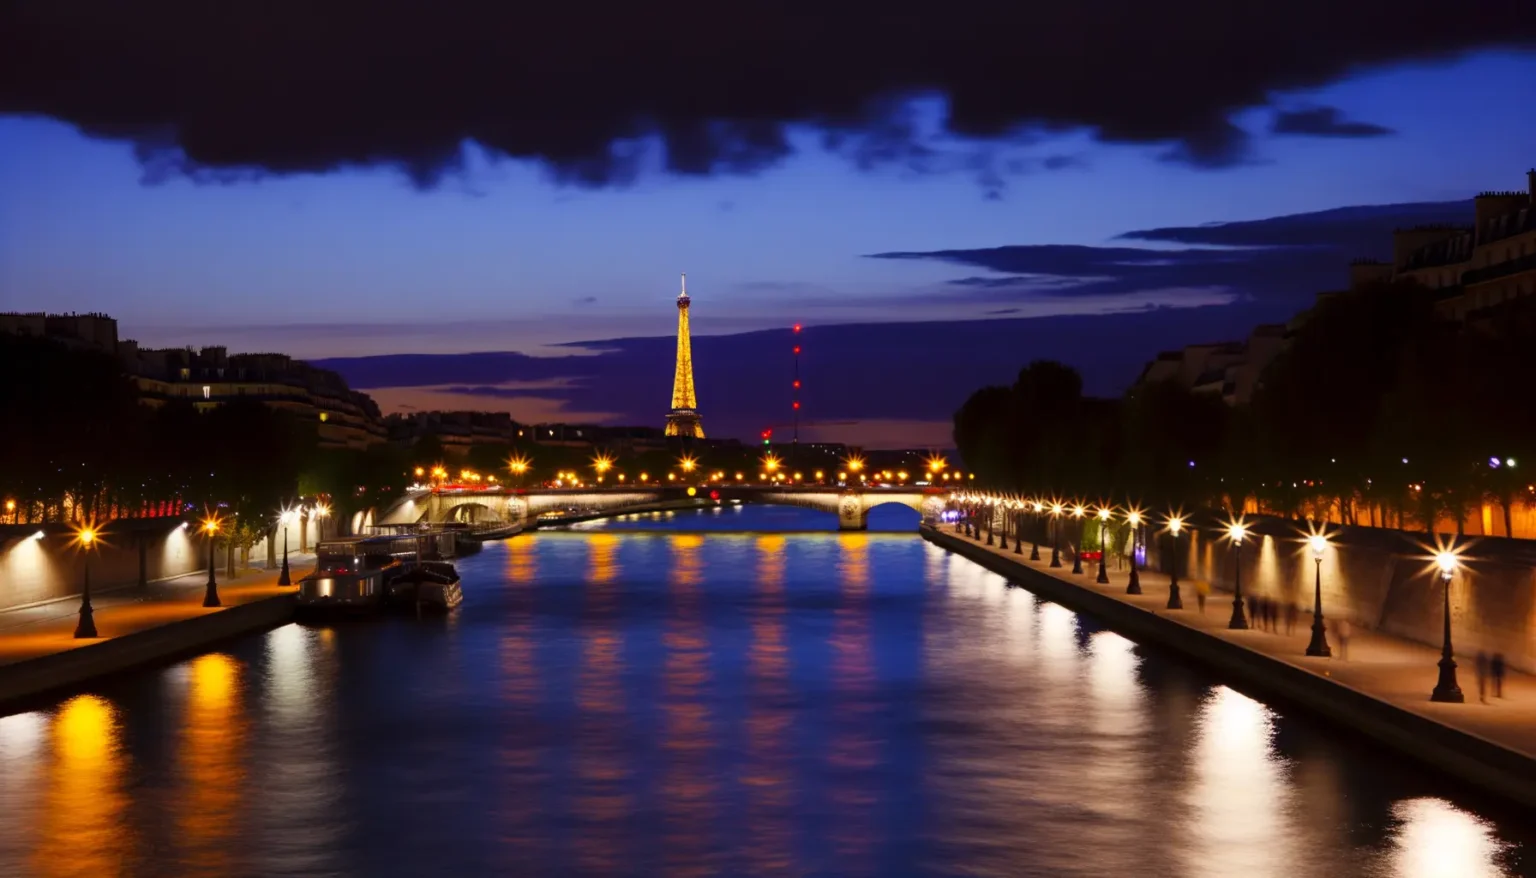 Blick auf den beleuchteten Eiffelturm bei Dämmerung mit der Seine im Vordergrund, umgeben von Straßenlaternen und der Uferpromenade von Paris.